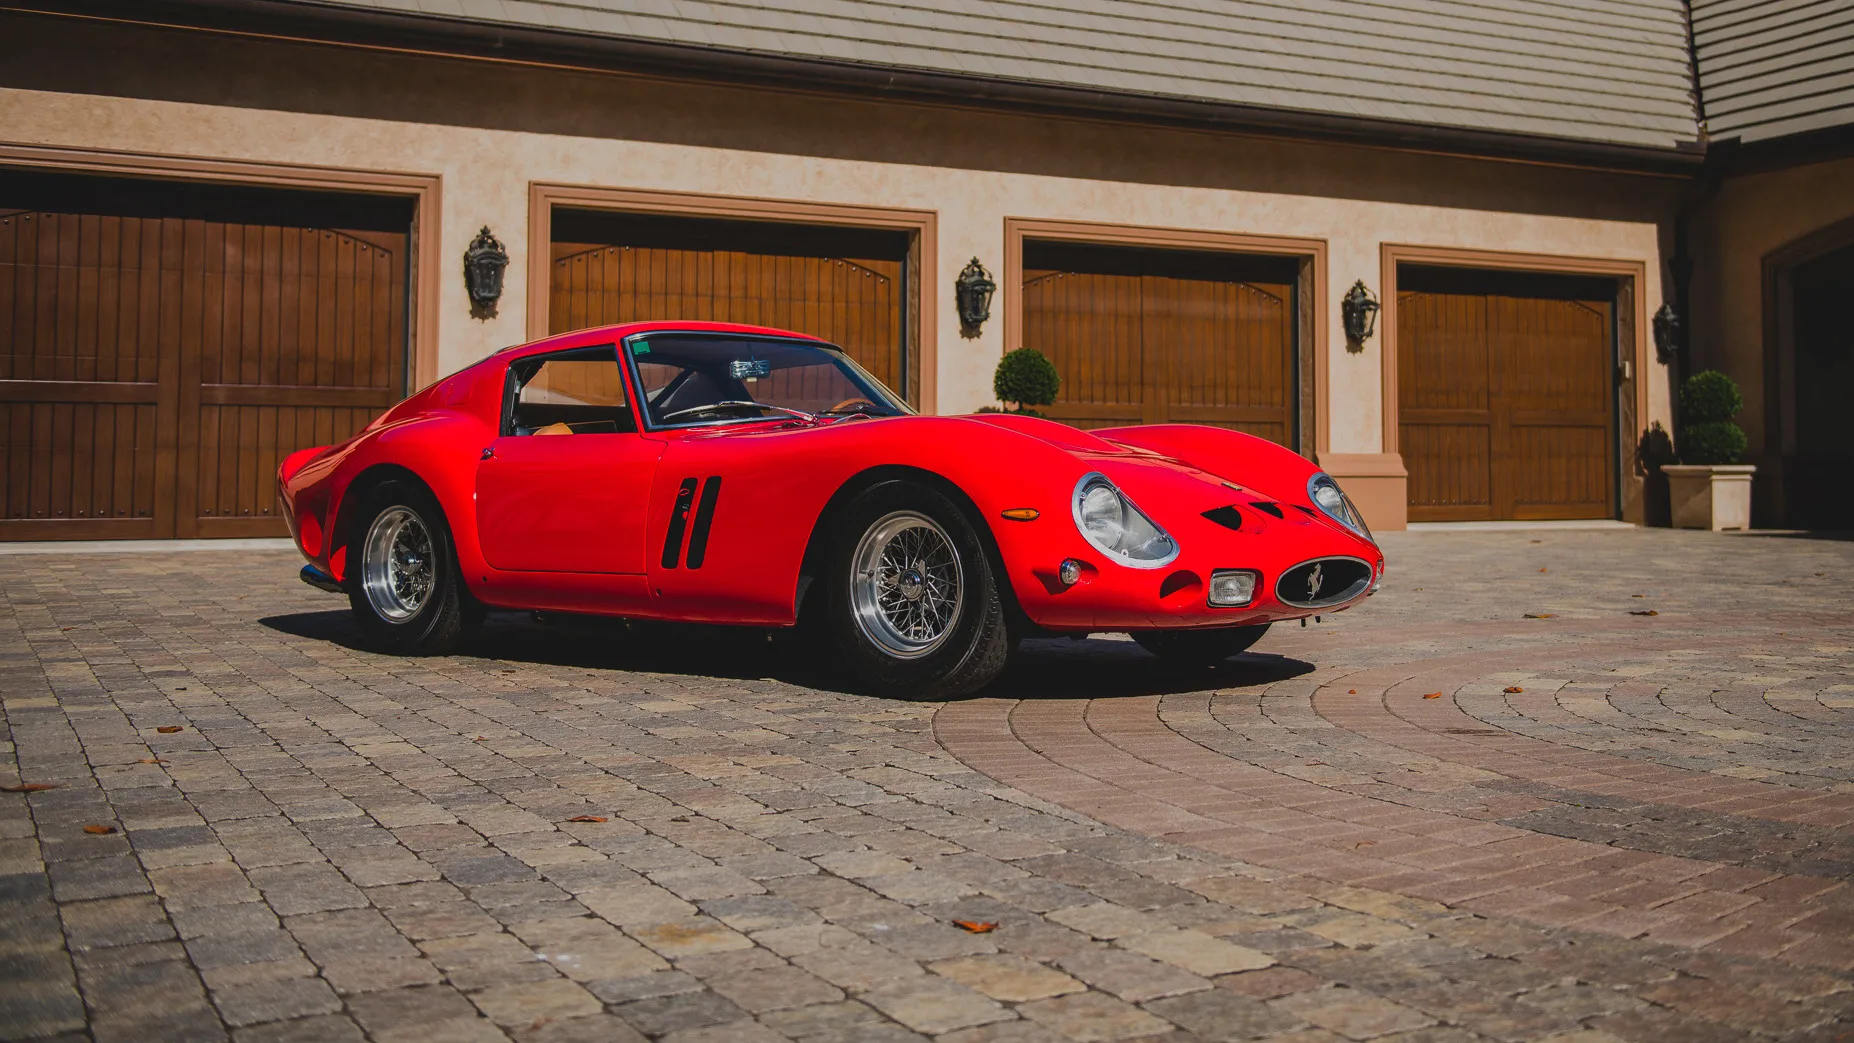 Aparece a la venta un Ferrari 250 GTO, aunque su precio, como ocurre siempre, es un misterio